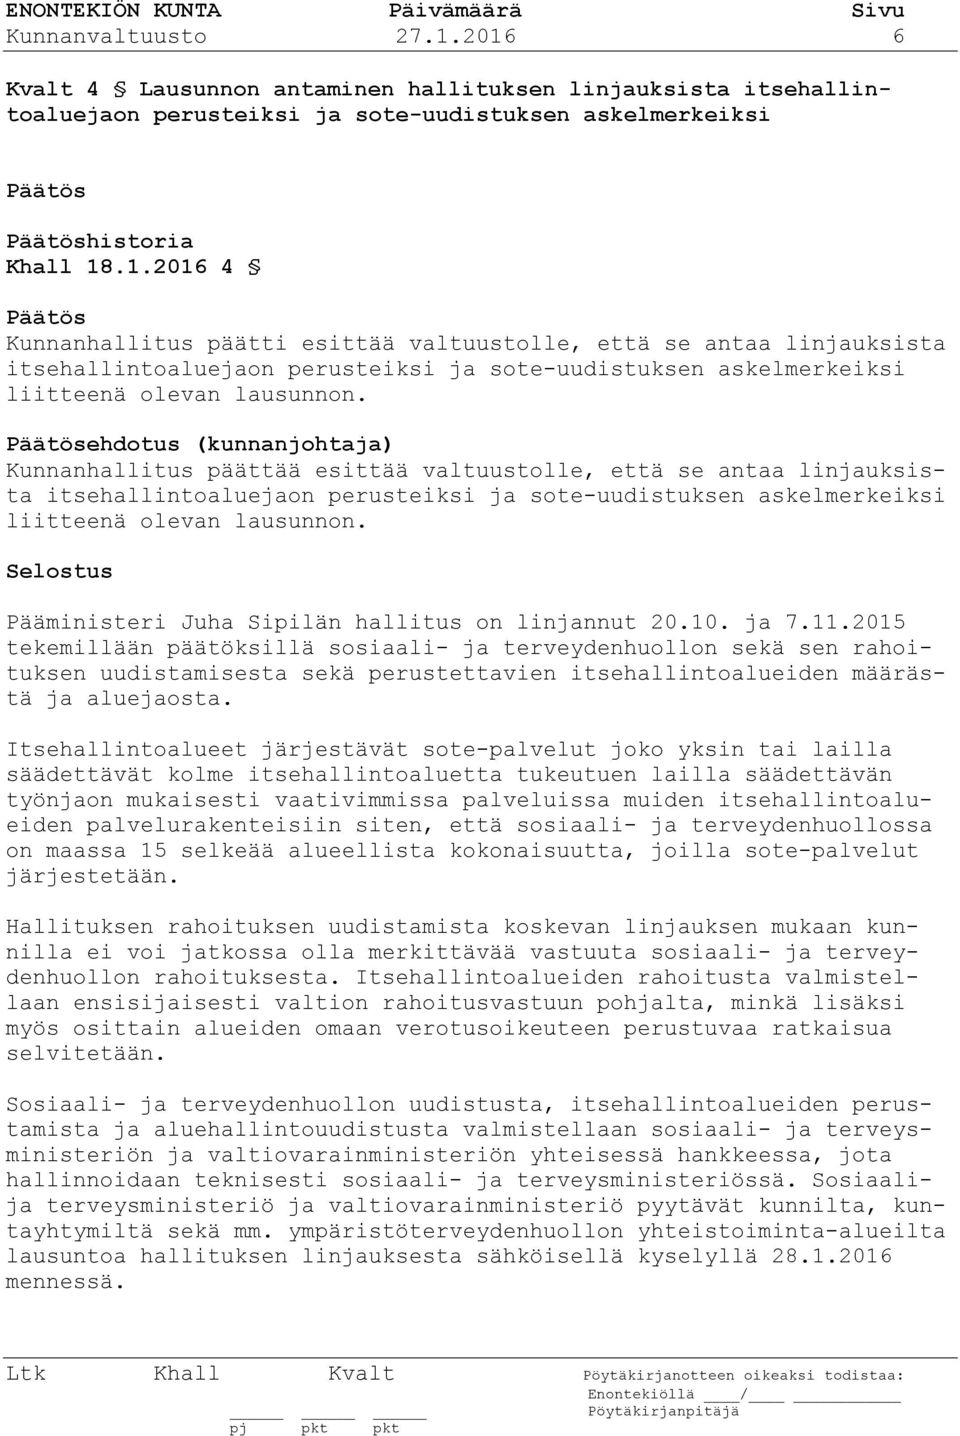 Pääministeri Juha Sipilän hallitus on linjannut 20.10. ja 7.11.